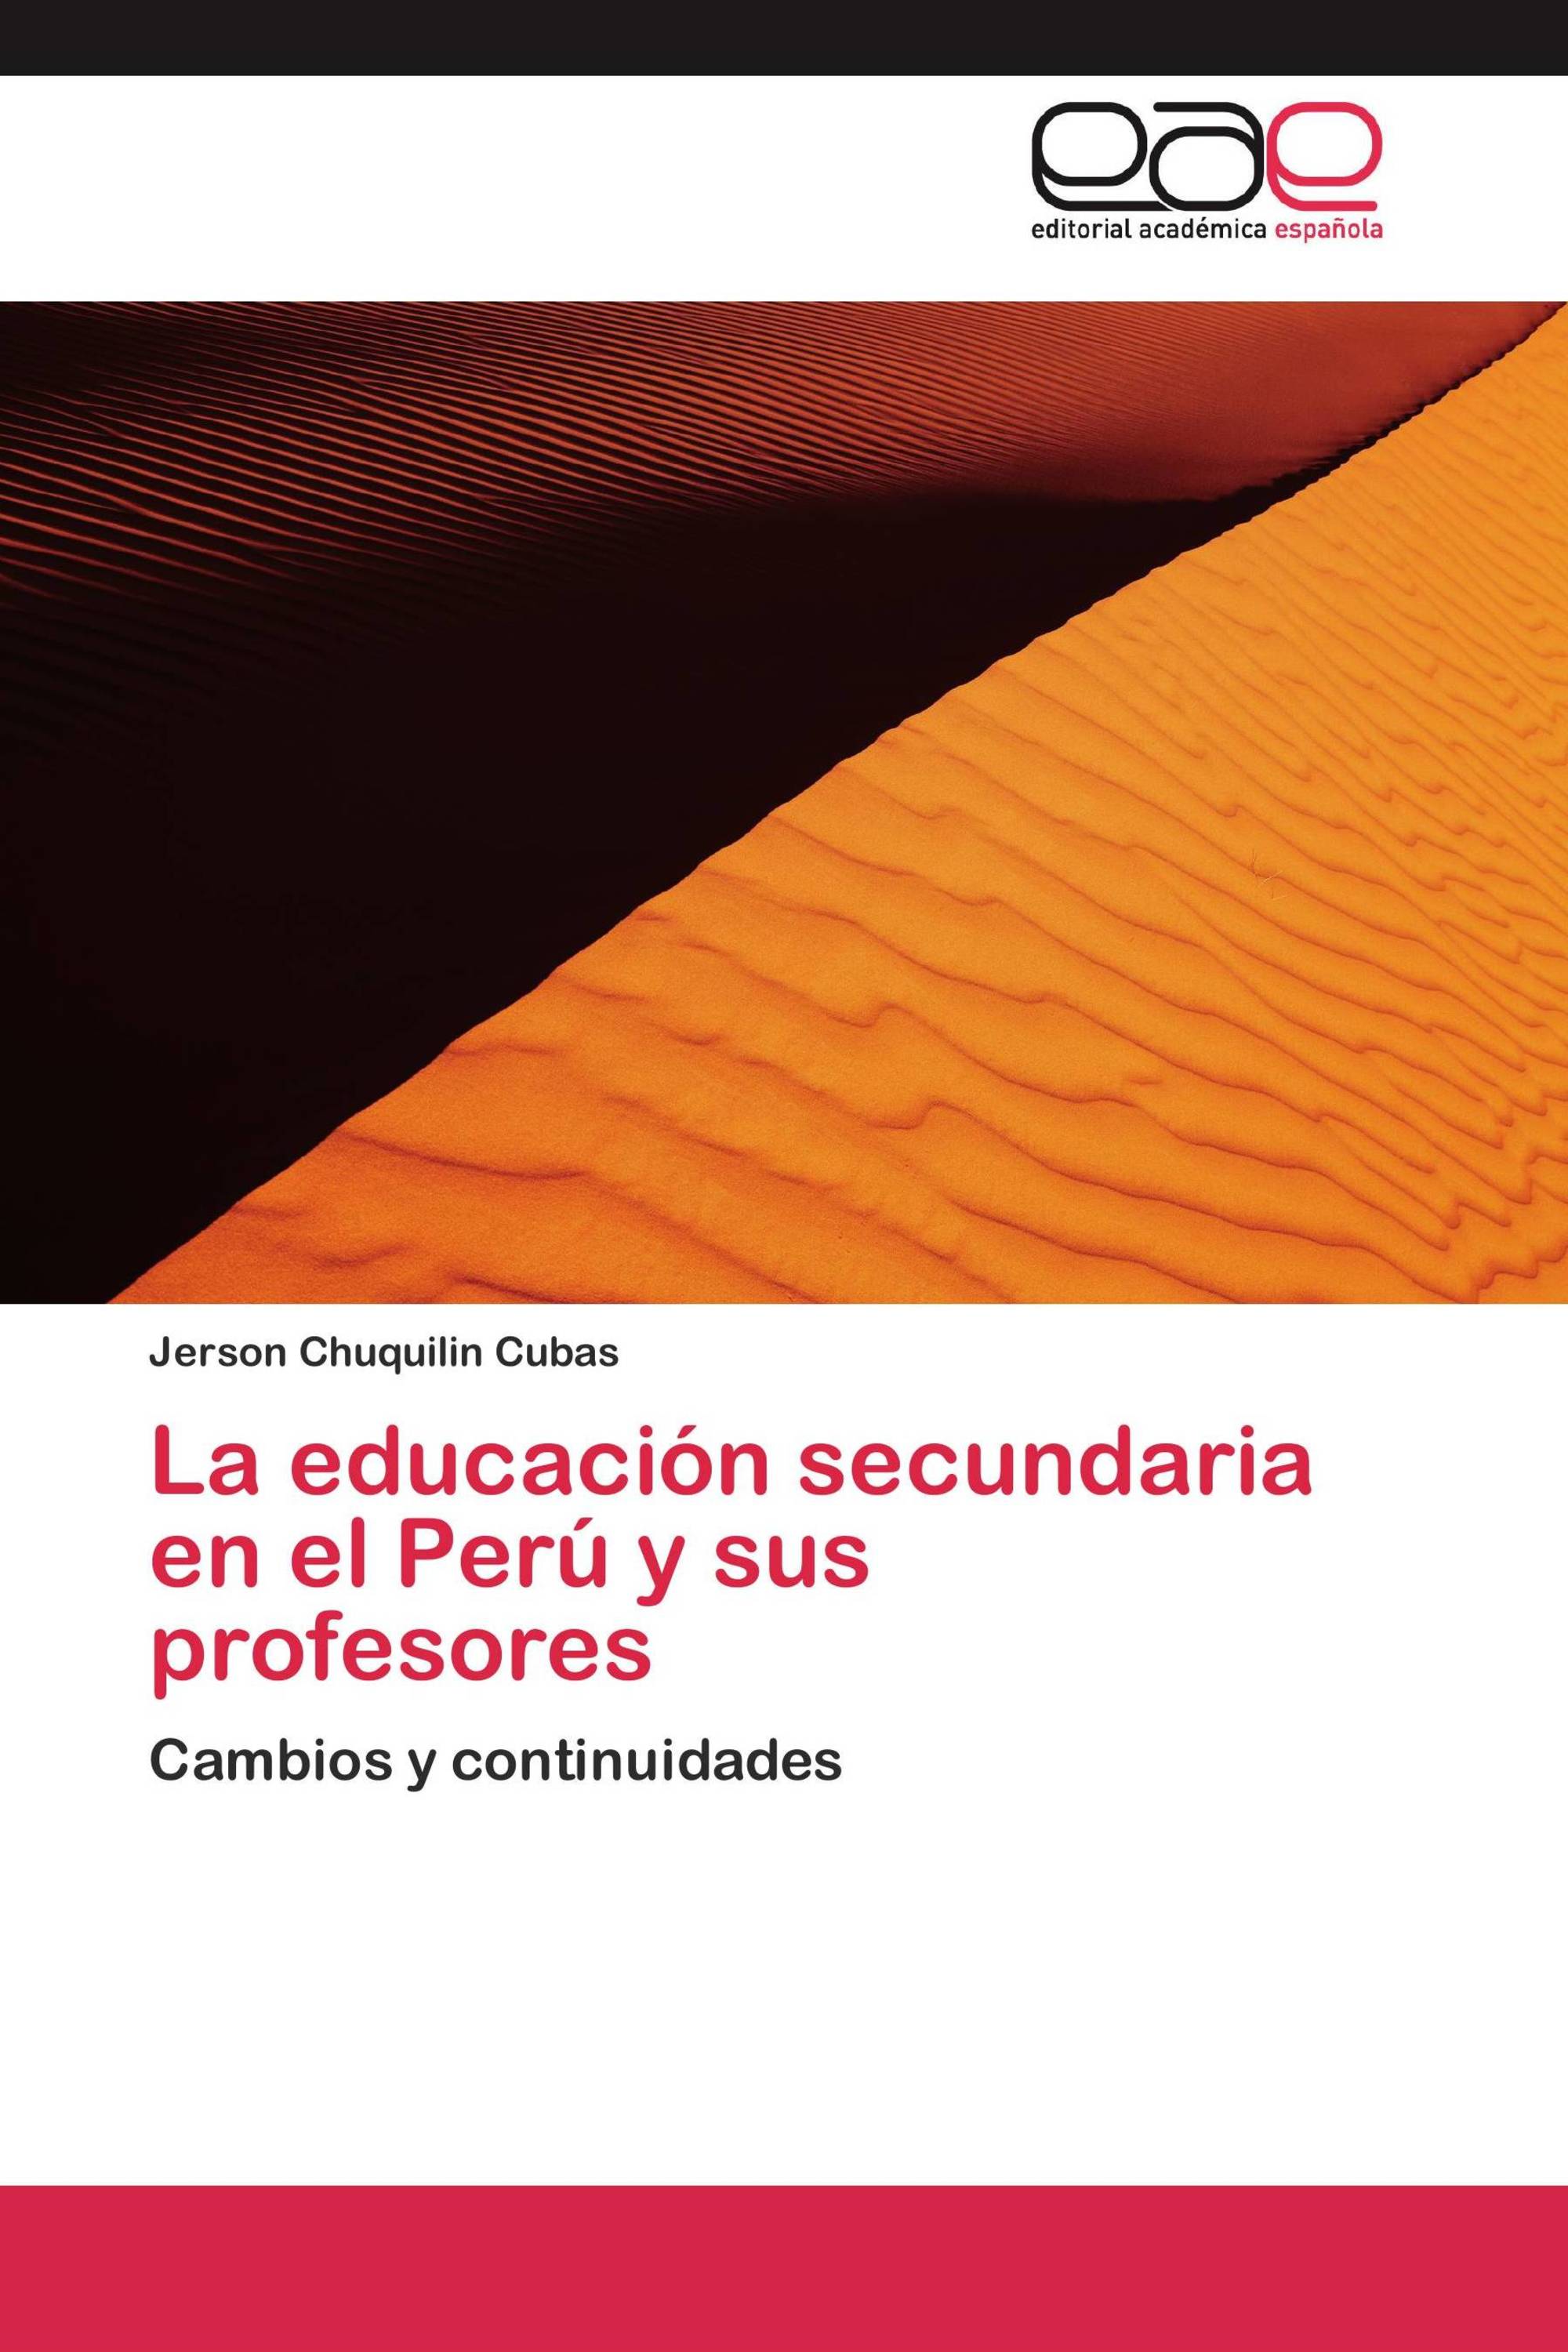 La educación secundaria en el Perú y sus profesores